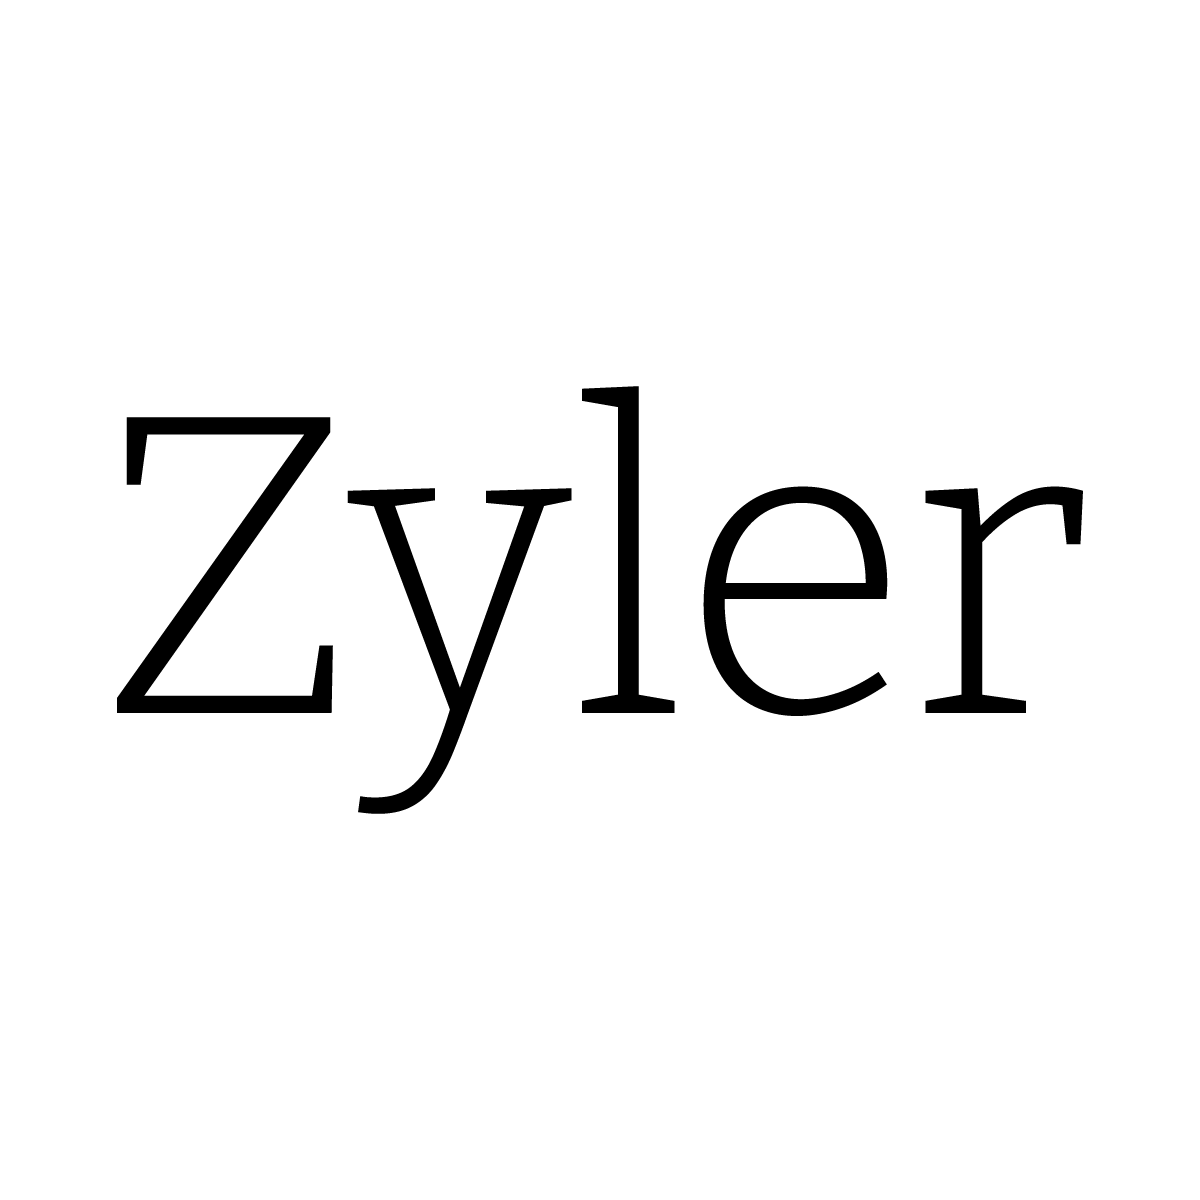 Zyler